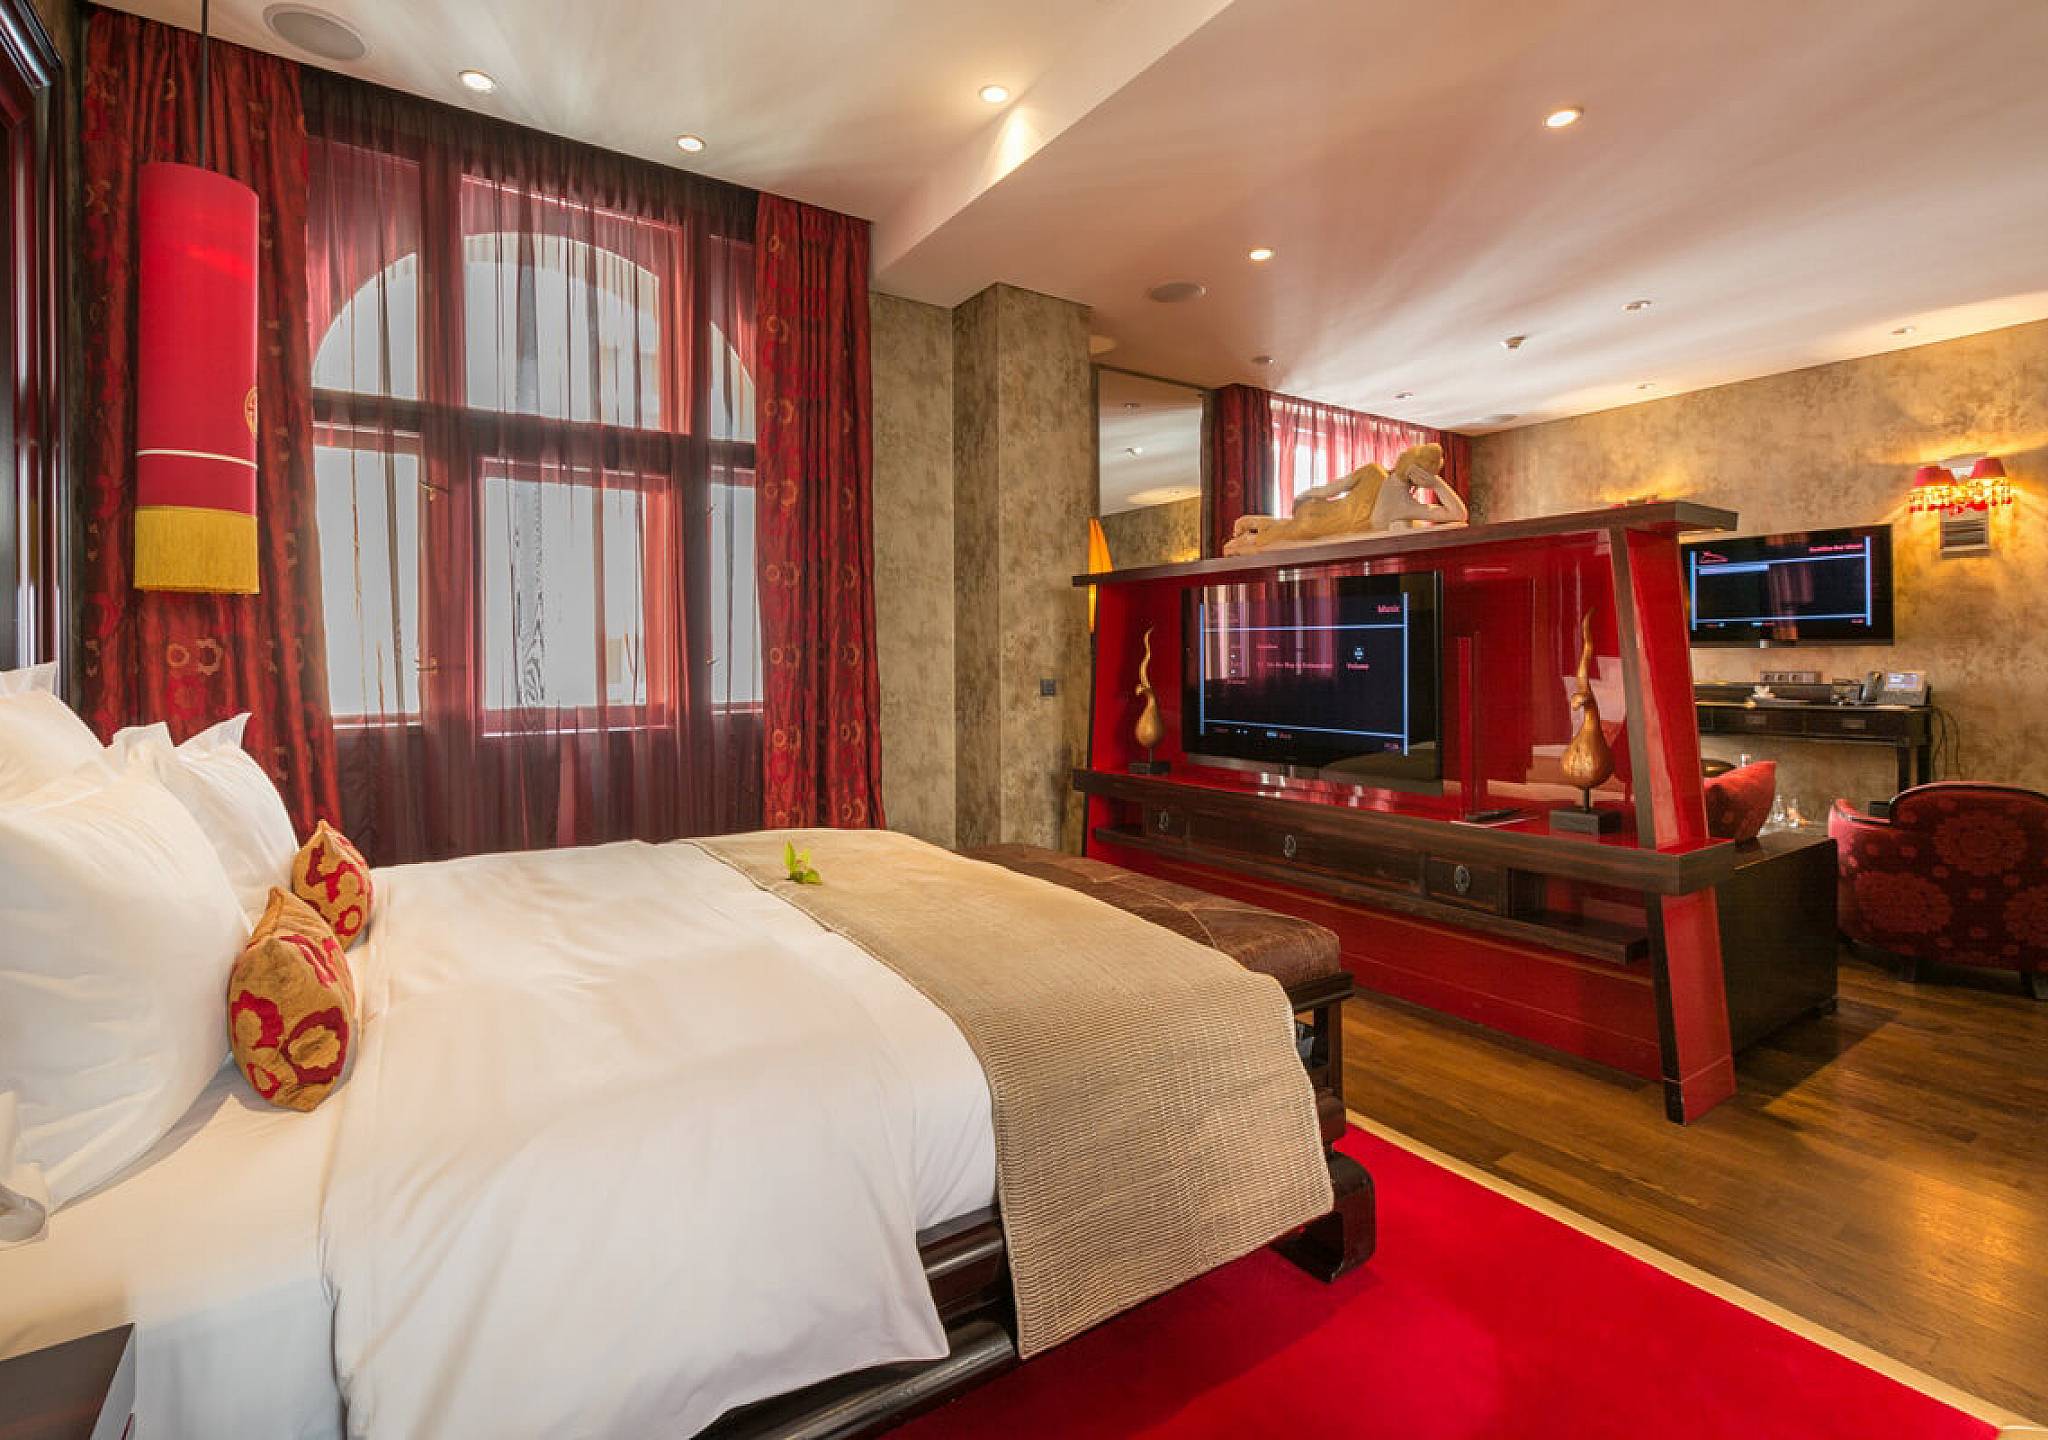 smart room in Hotel design trends 